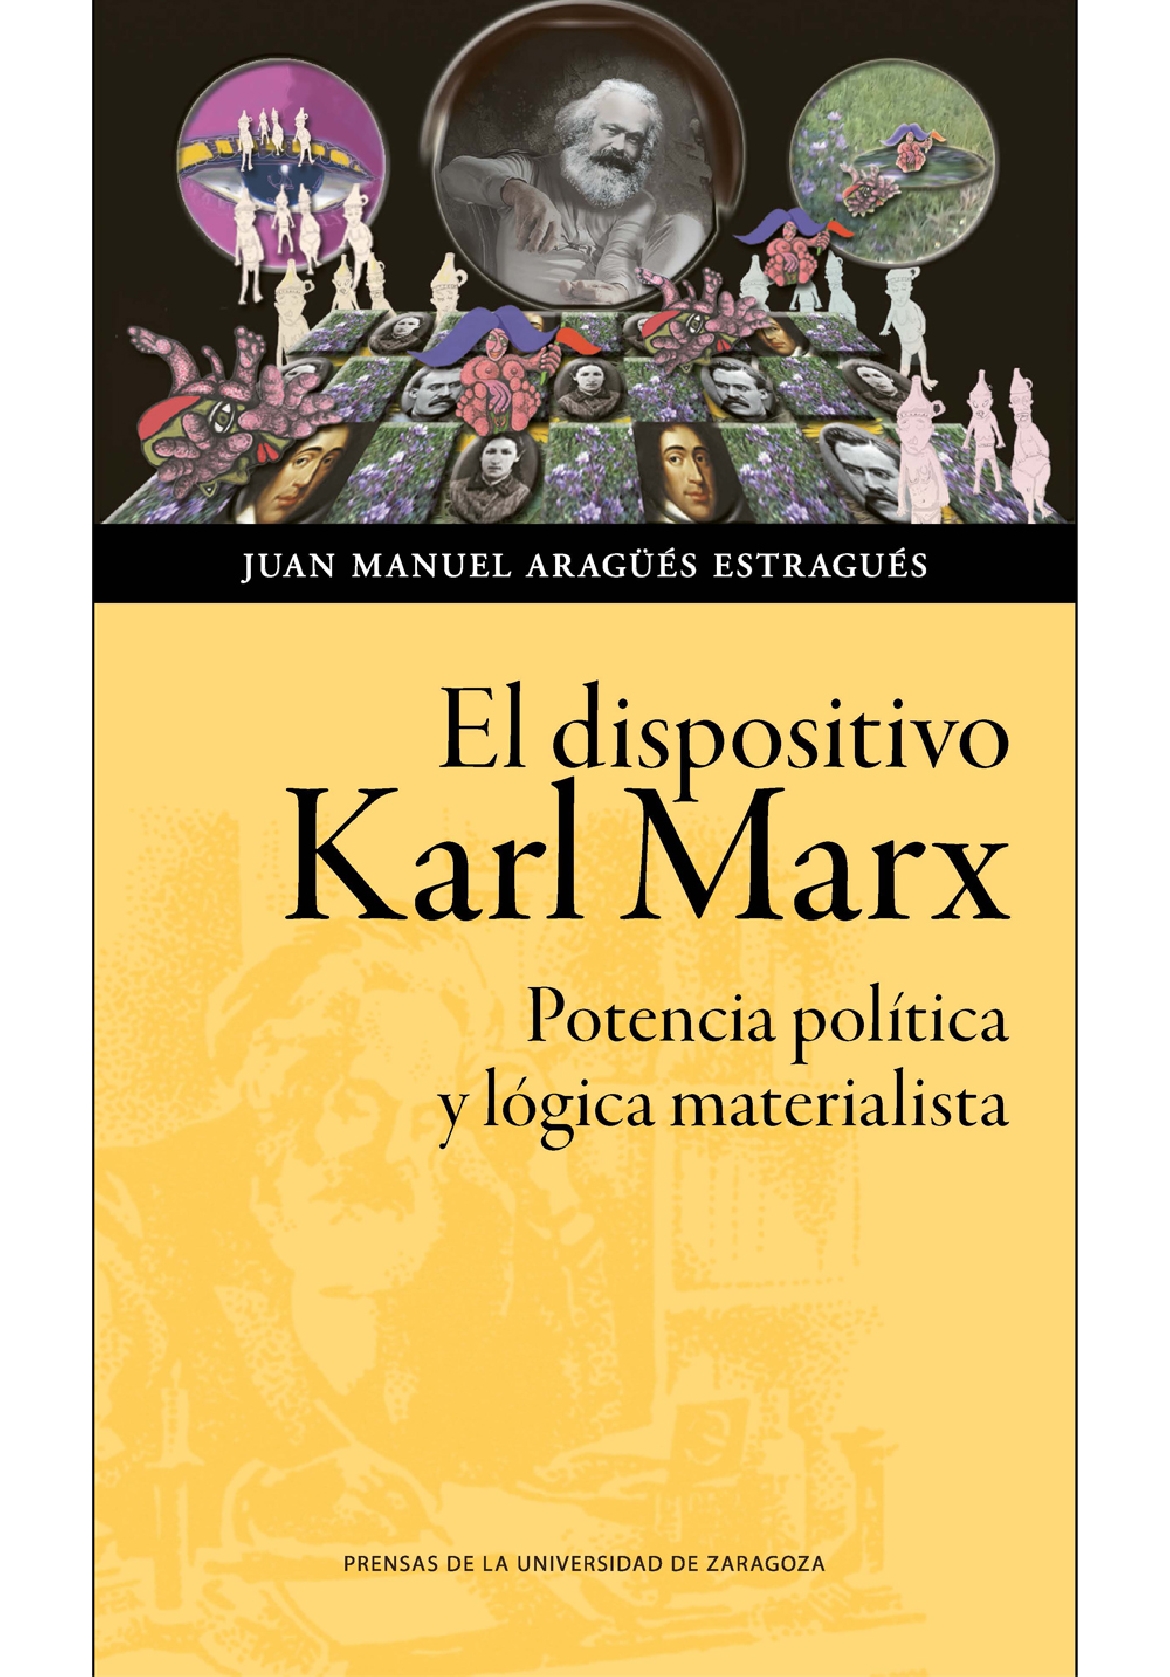 Presentación del libro “EL DISPOSITIVO KARL MARX. Potencia política y lógica materialista”, de Juan Manuel Aragüés Estragués